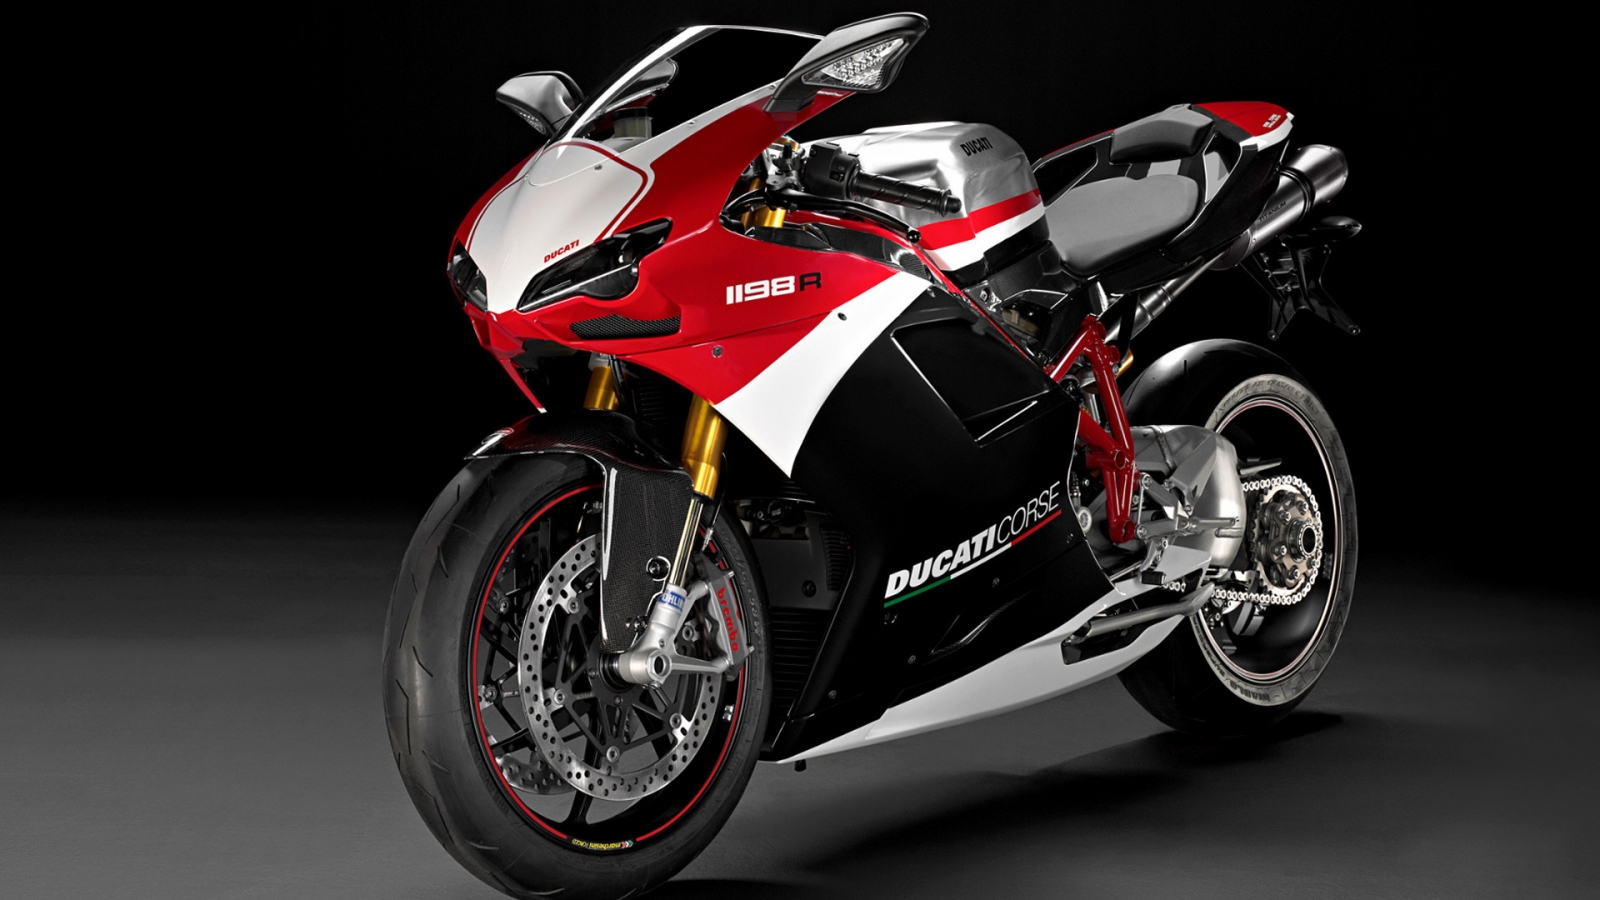 Ducati Superbike-1198-R-Corse for 1600 x 900 HDTV resolution